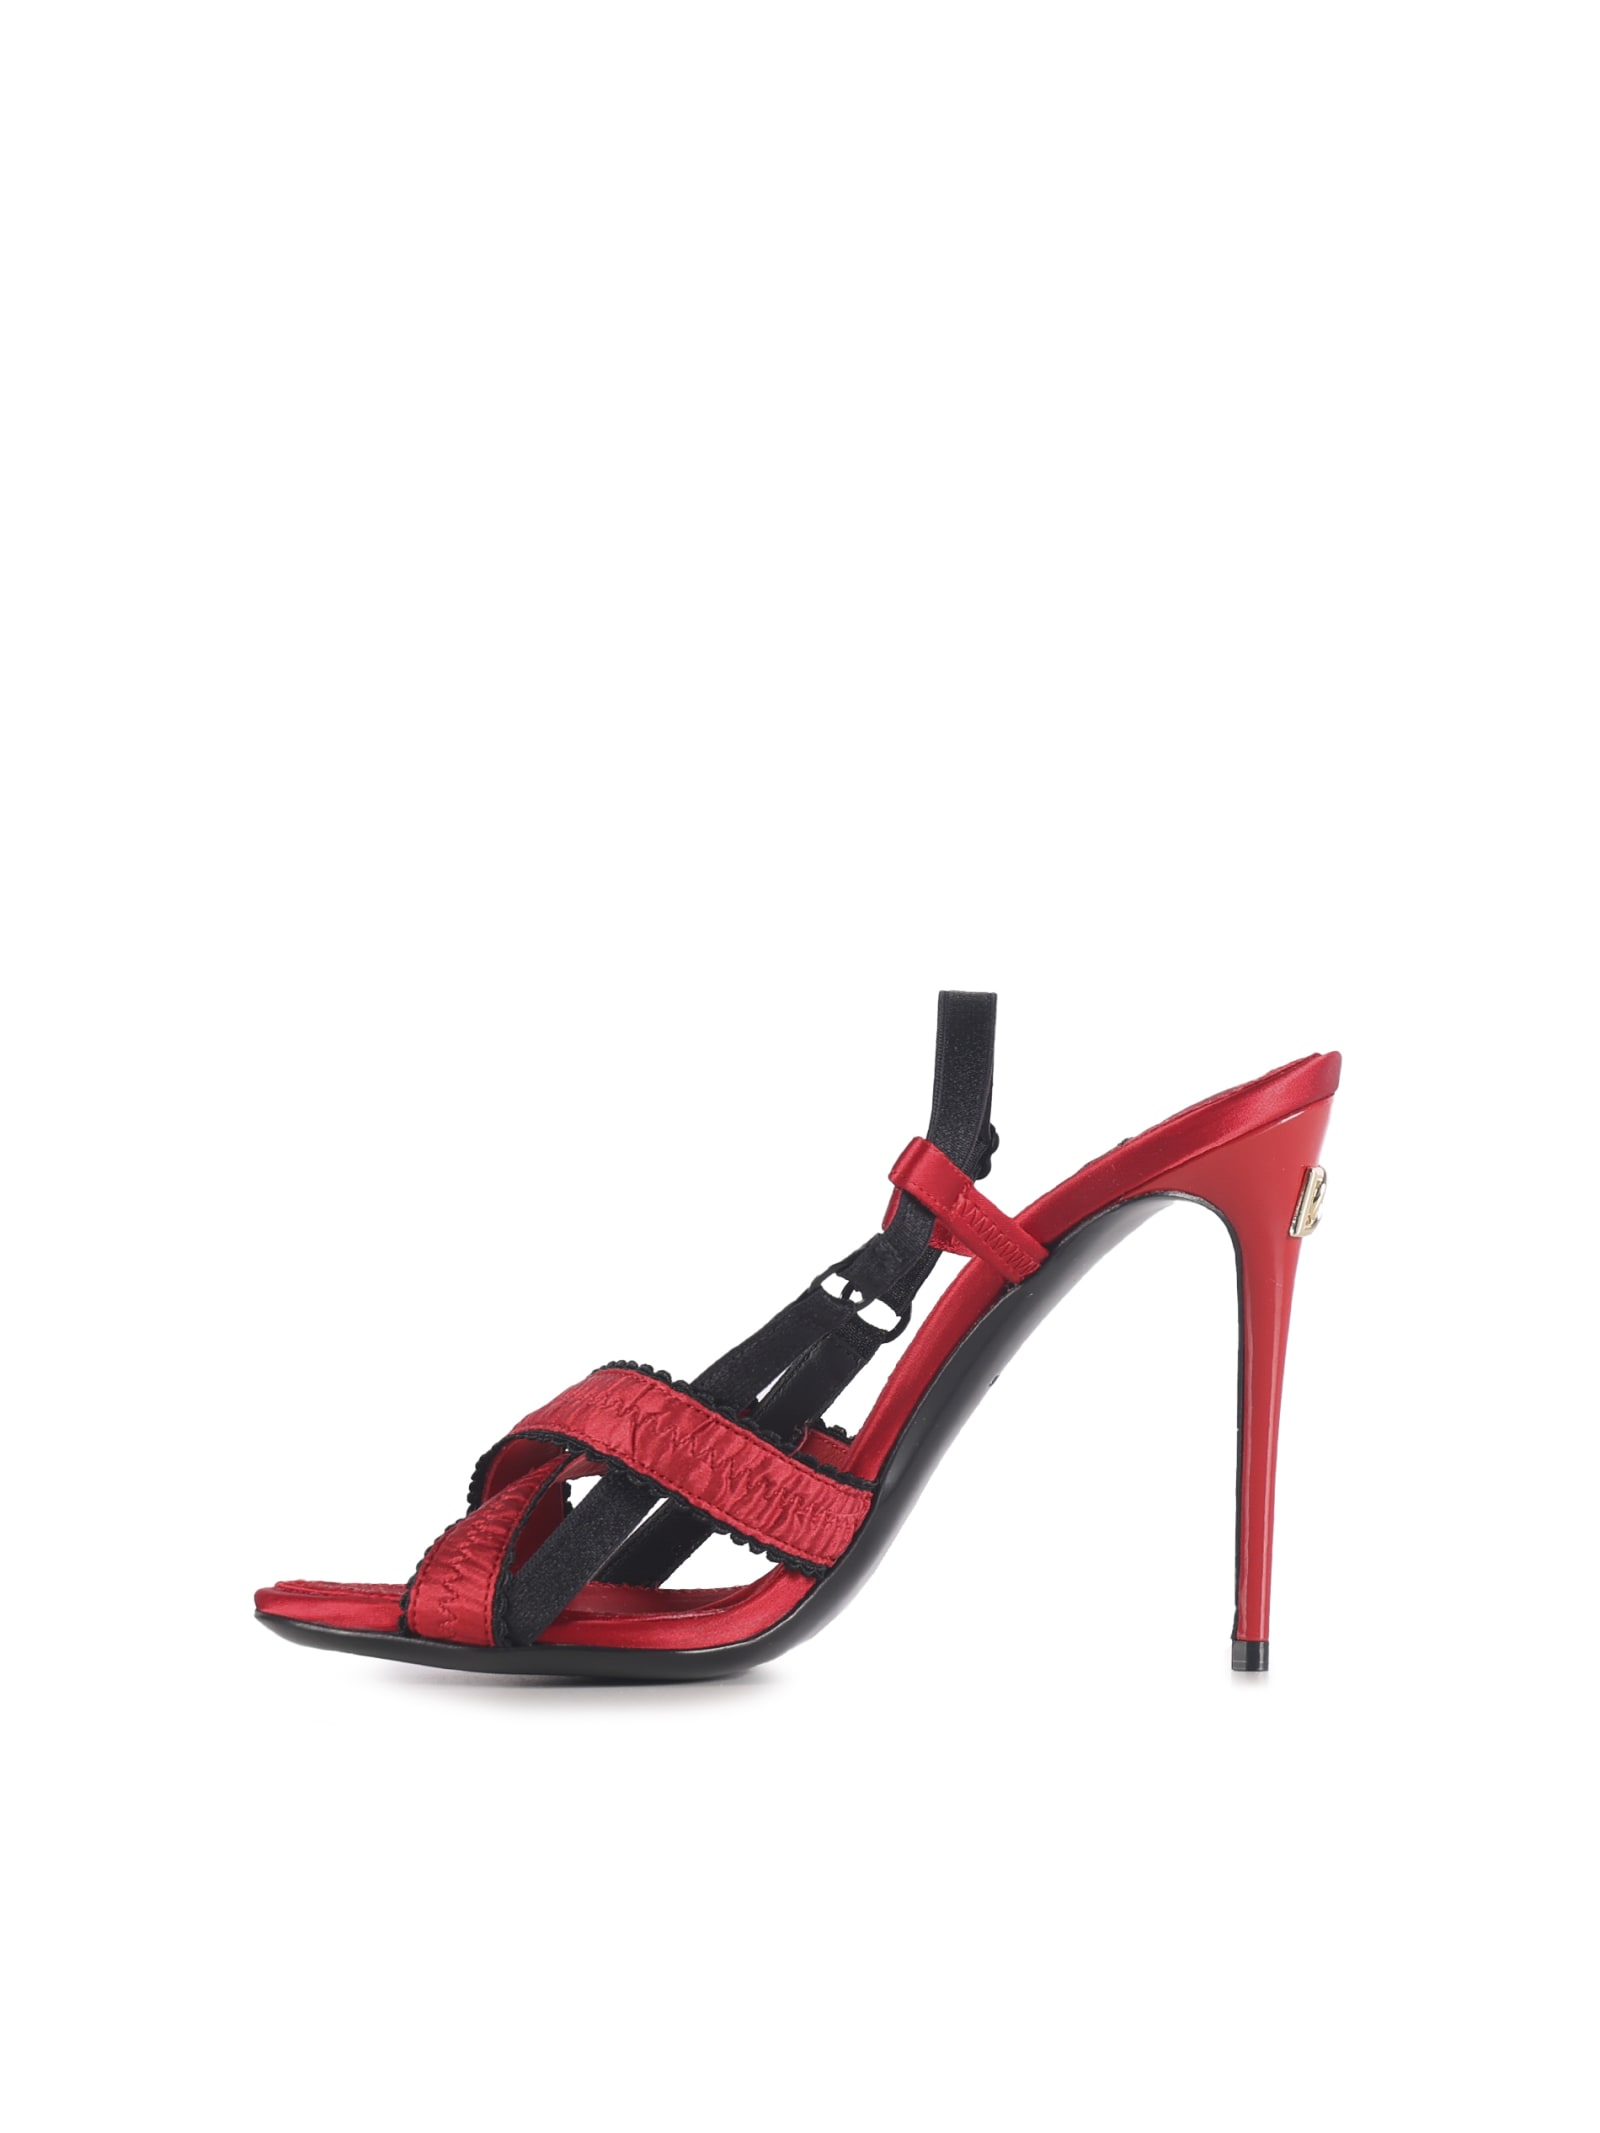 Shop Dolce & Gabbana Corset-style Satin Sandals